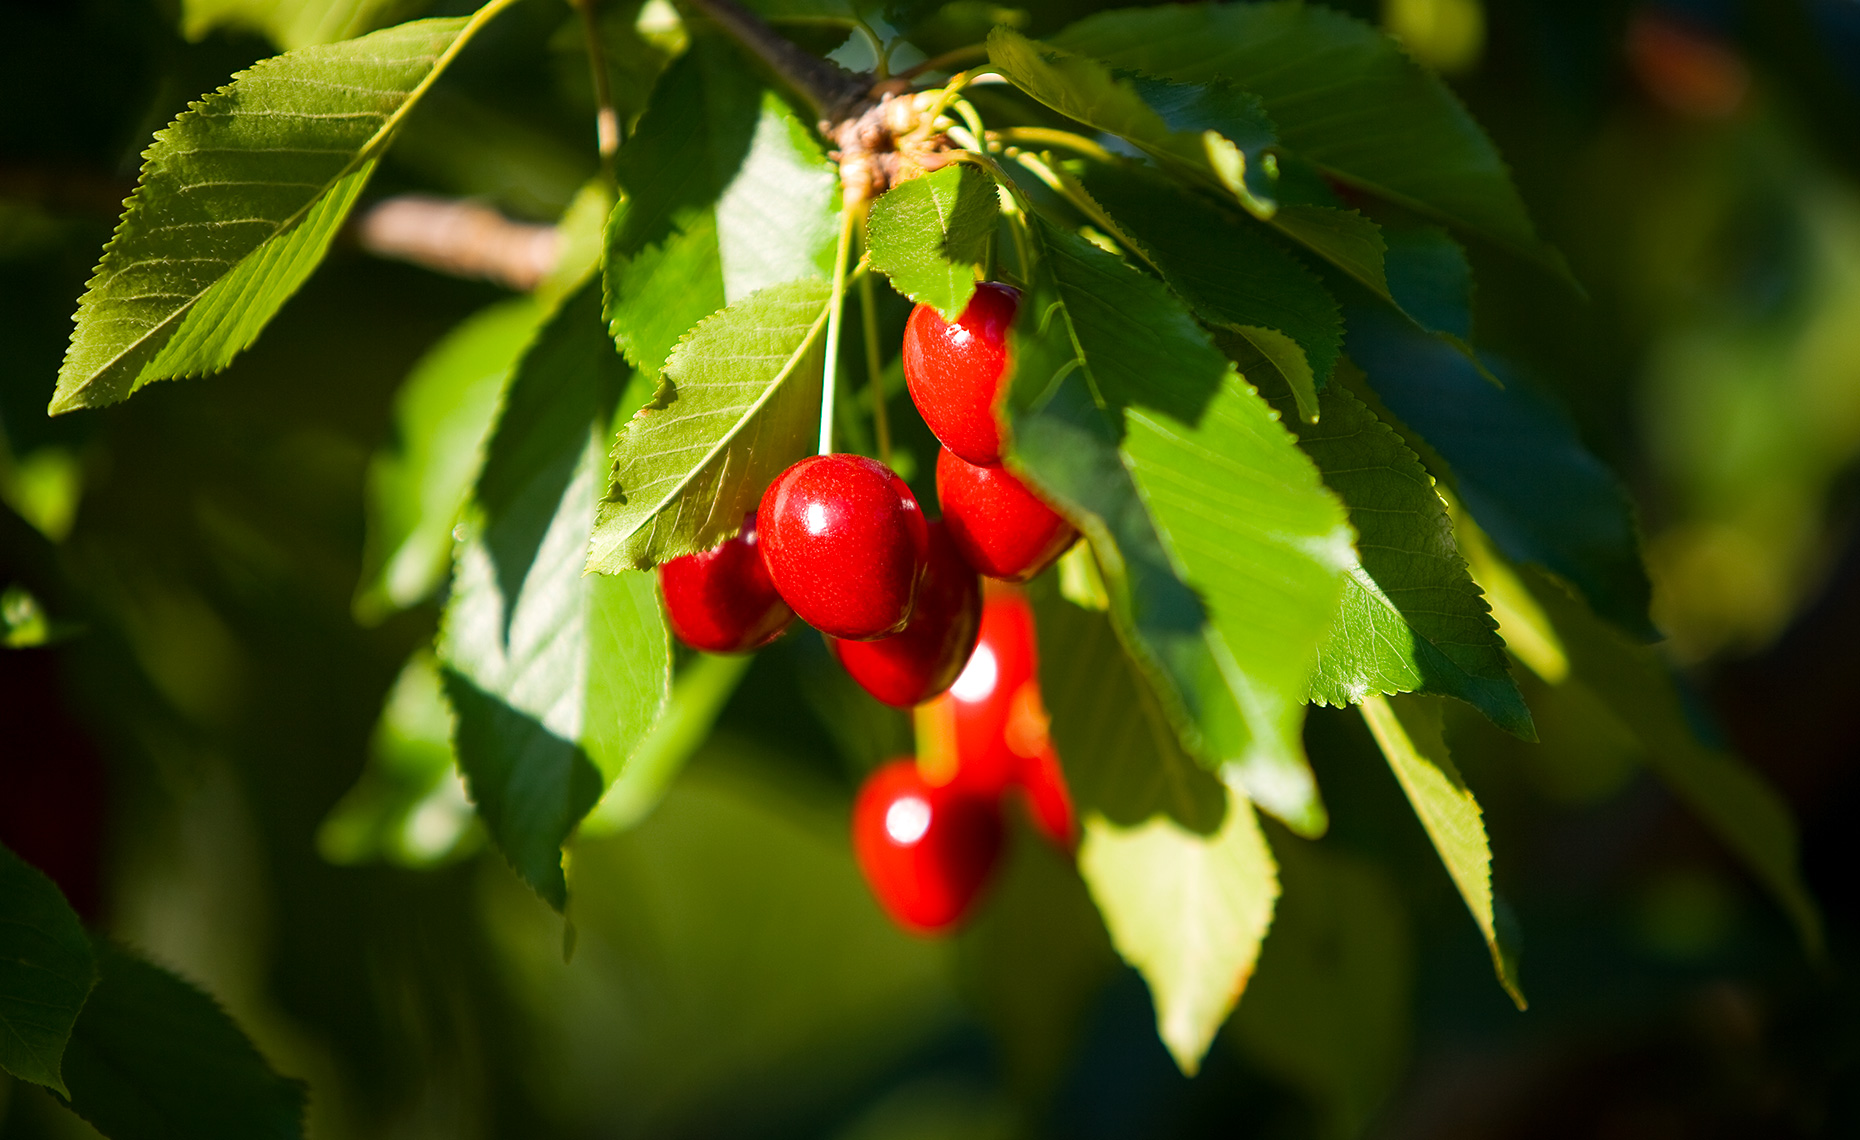 Bing cherries on cherry tree